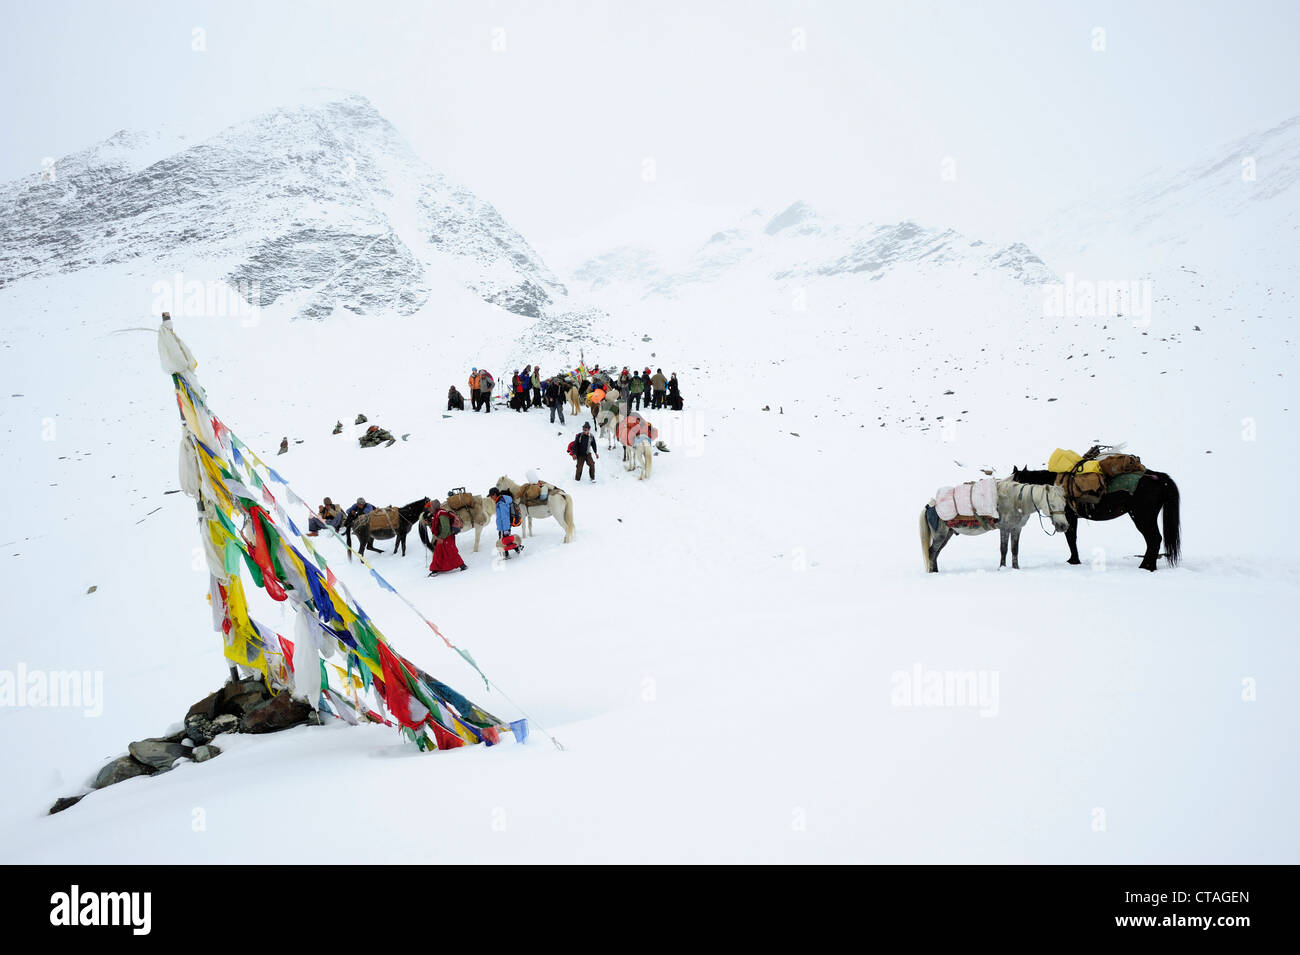 Monks, people and pack animals at snow-covered pass, Shingo La, Zanskar Range Traverse, Zanskar Range, Zanskar, Ladakh, India Stock Photo